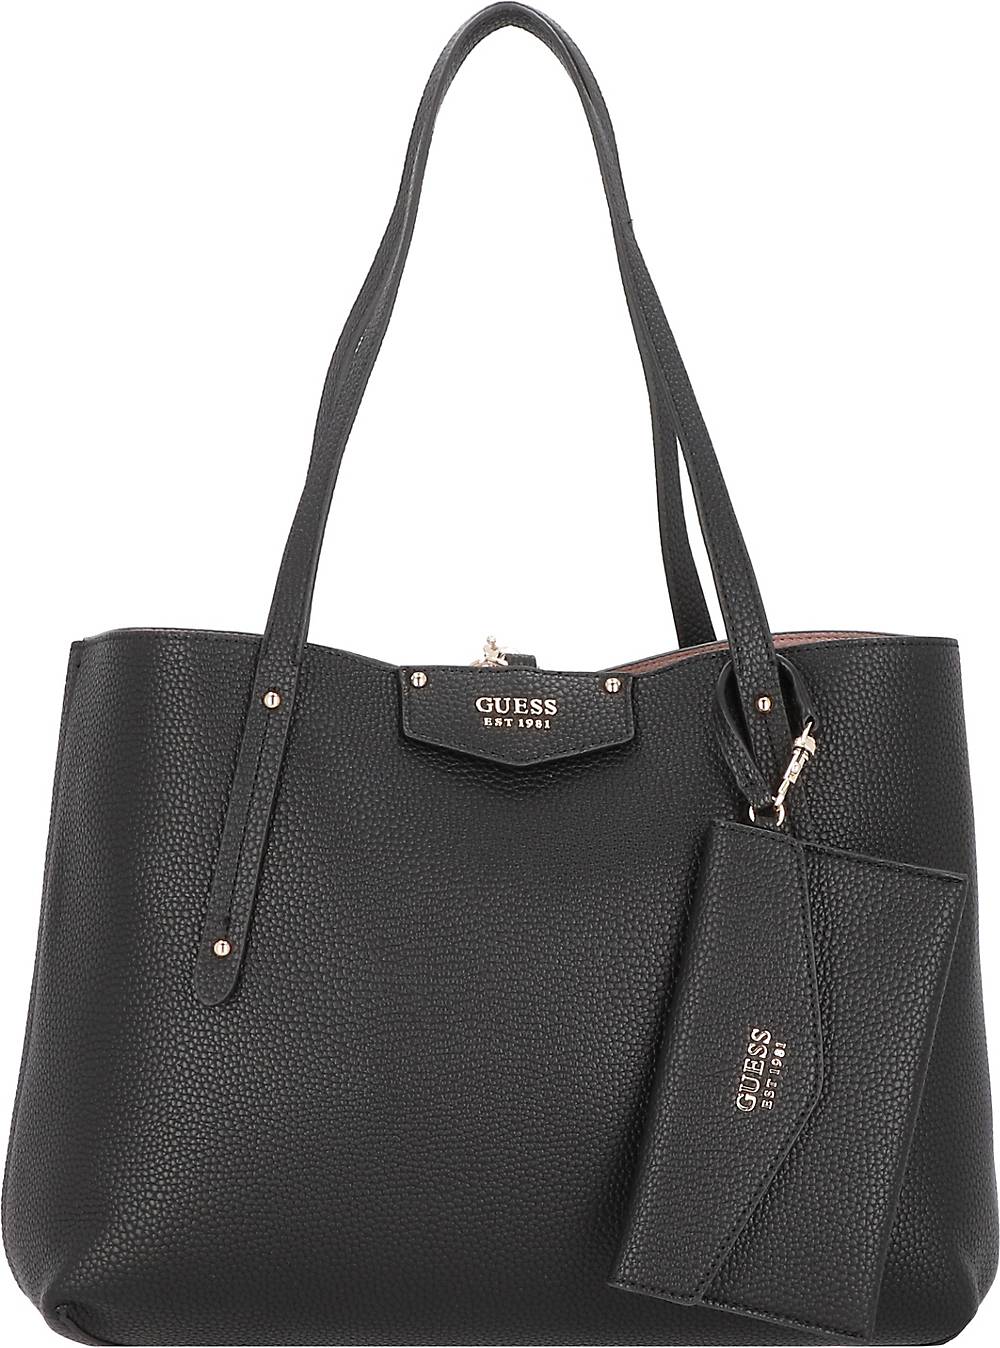 GUESS, Eco Brenton Shopper Tasche 36 Cm in schwarz, Shopper für Damen